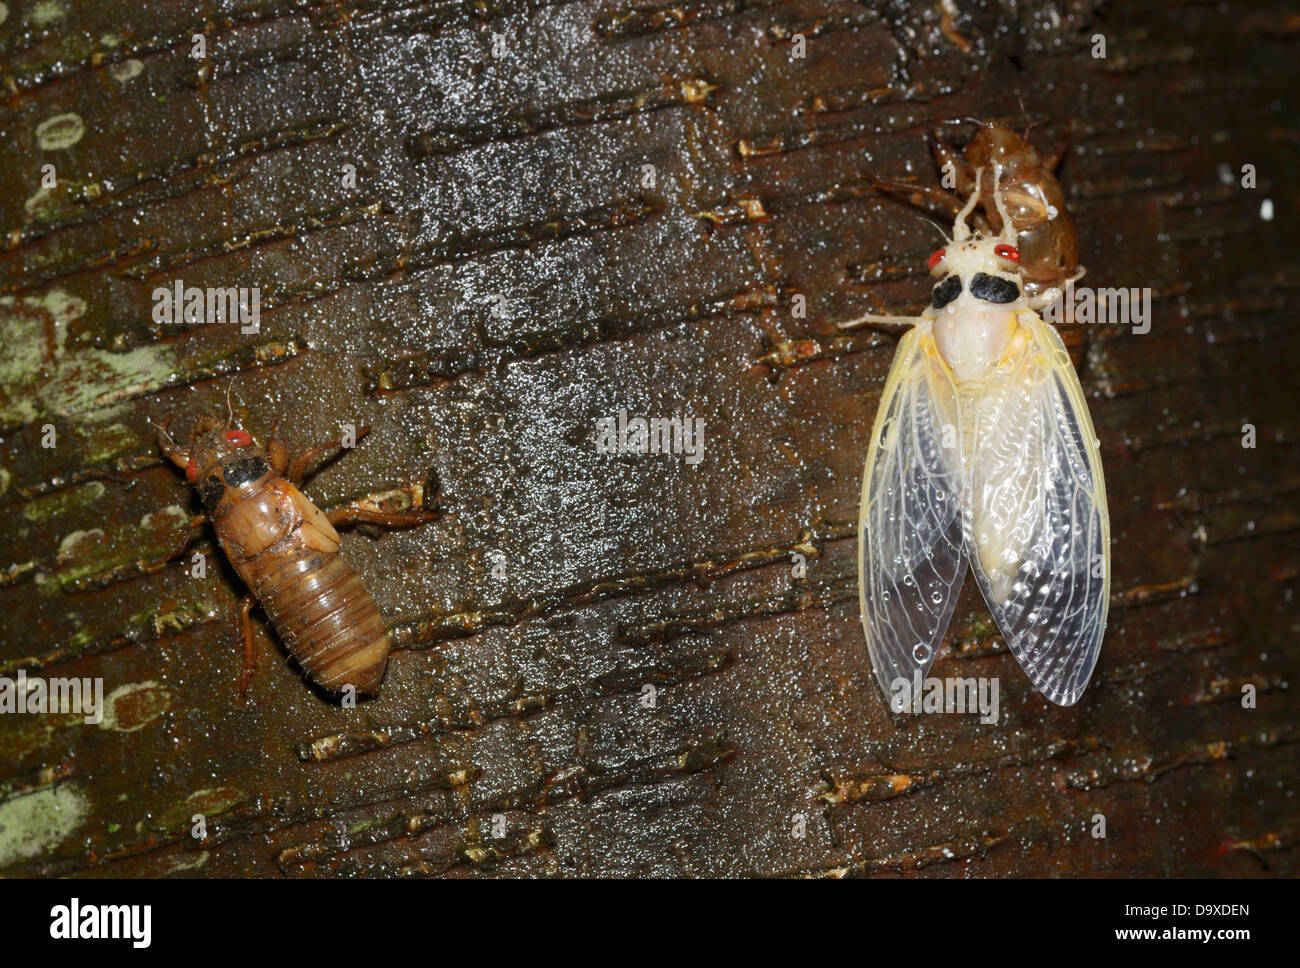 Zeitschrift (17 Jahre) Zikade Magicicada Septendecim, tauchte vor kurzem Nymphe auf links und Erwachsenen gleich zum Schluss Häutung auf der rechten Seite Stockfoto